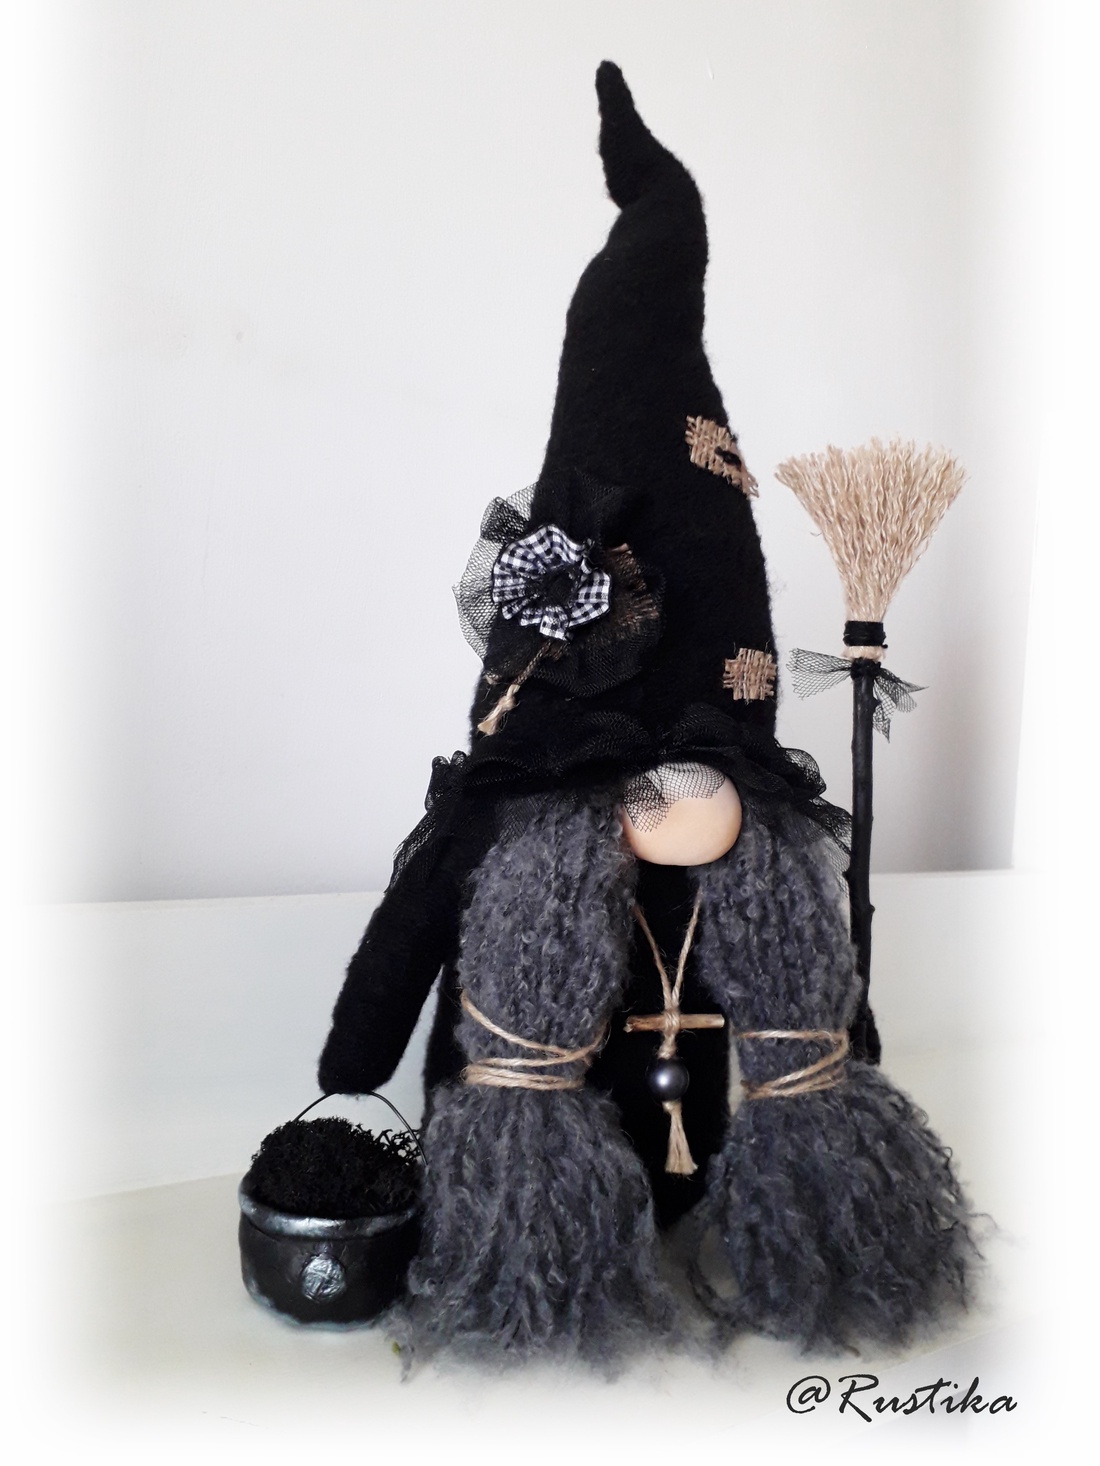 Gnom de colecție, Zelda Gnom vrăjitoare, Obsidian Woods Collection - accesorii locuință - accesorii pentru decorat casa - elfi - Artynos.ro